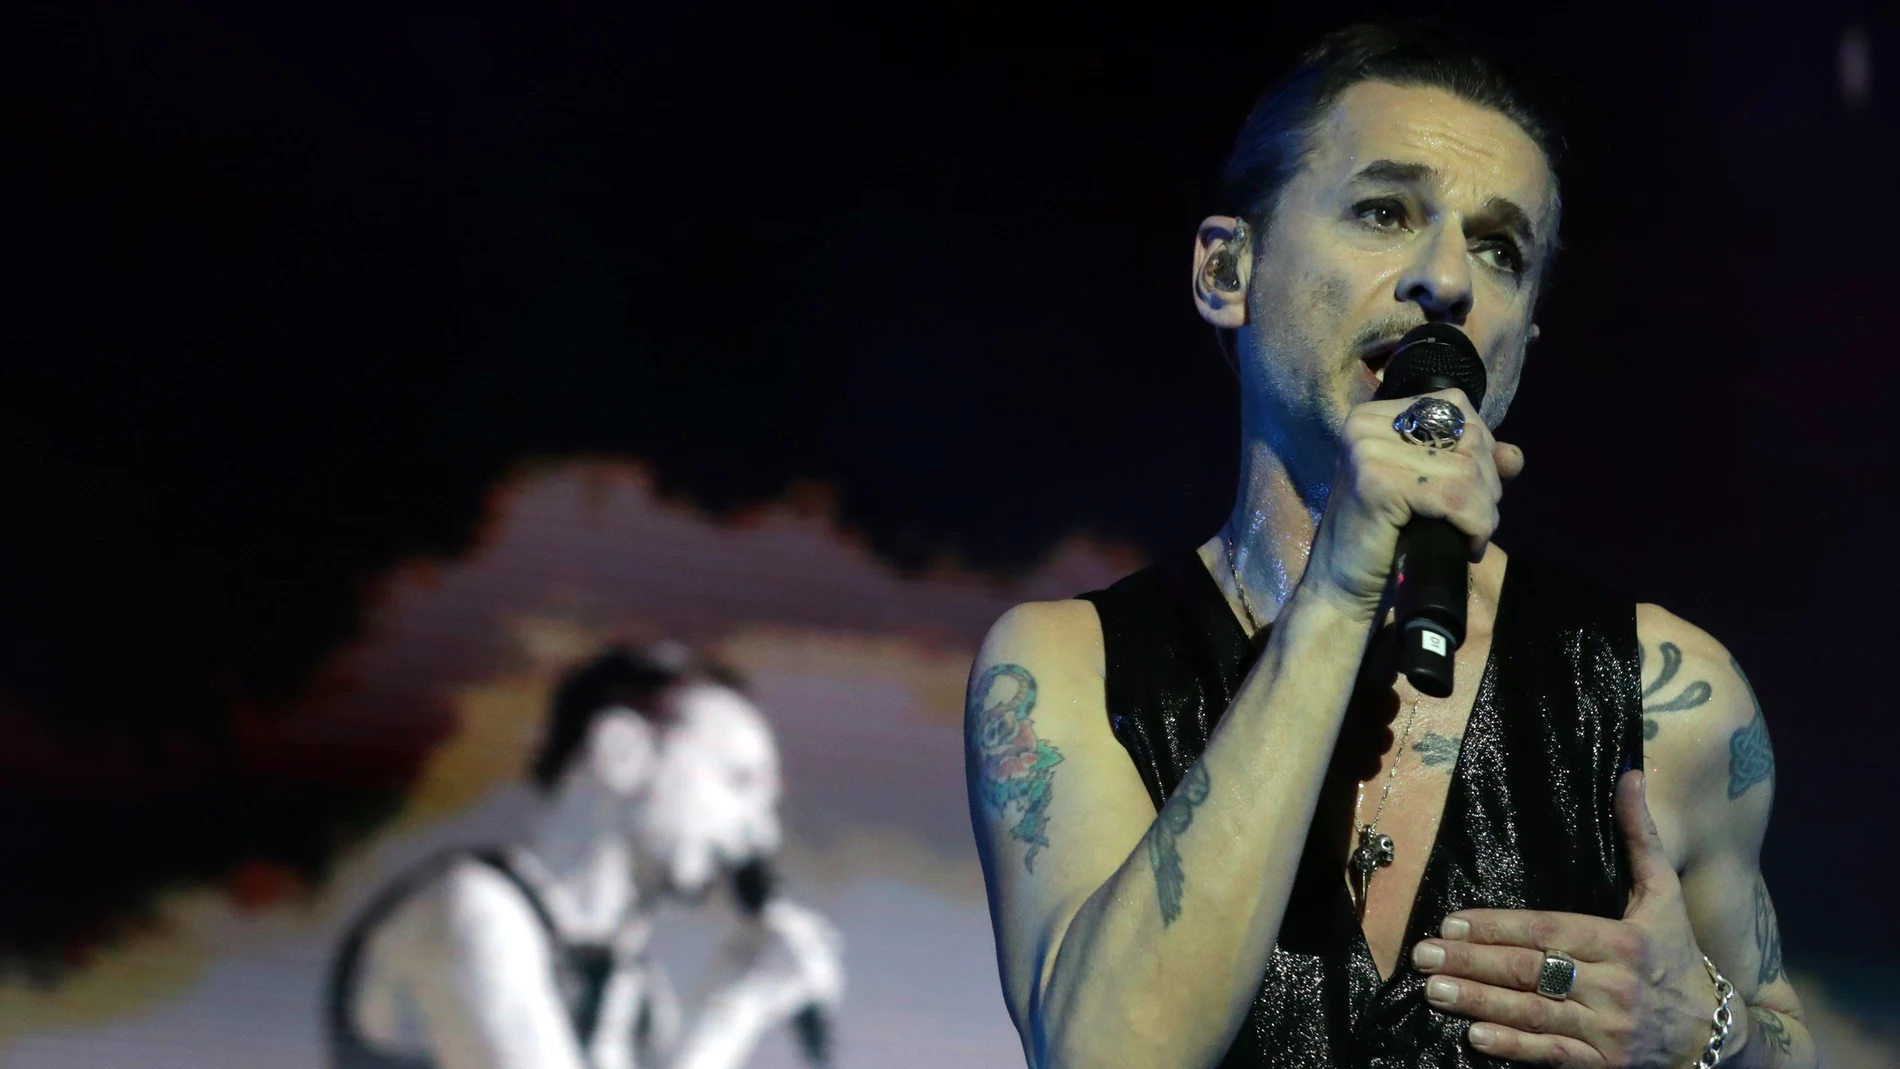 Concierto de la banda británica Depeche Mode en el WiZink Center de Madrid